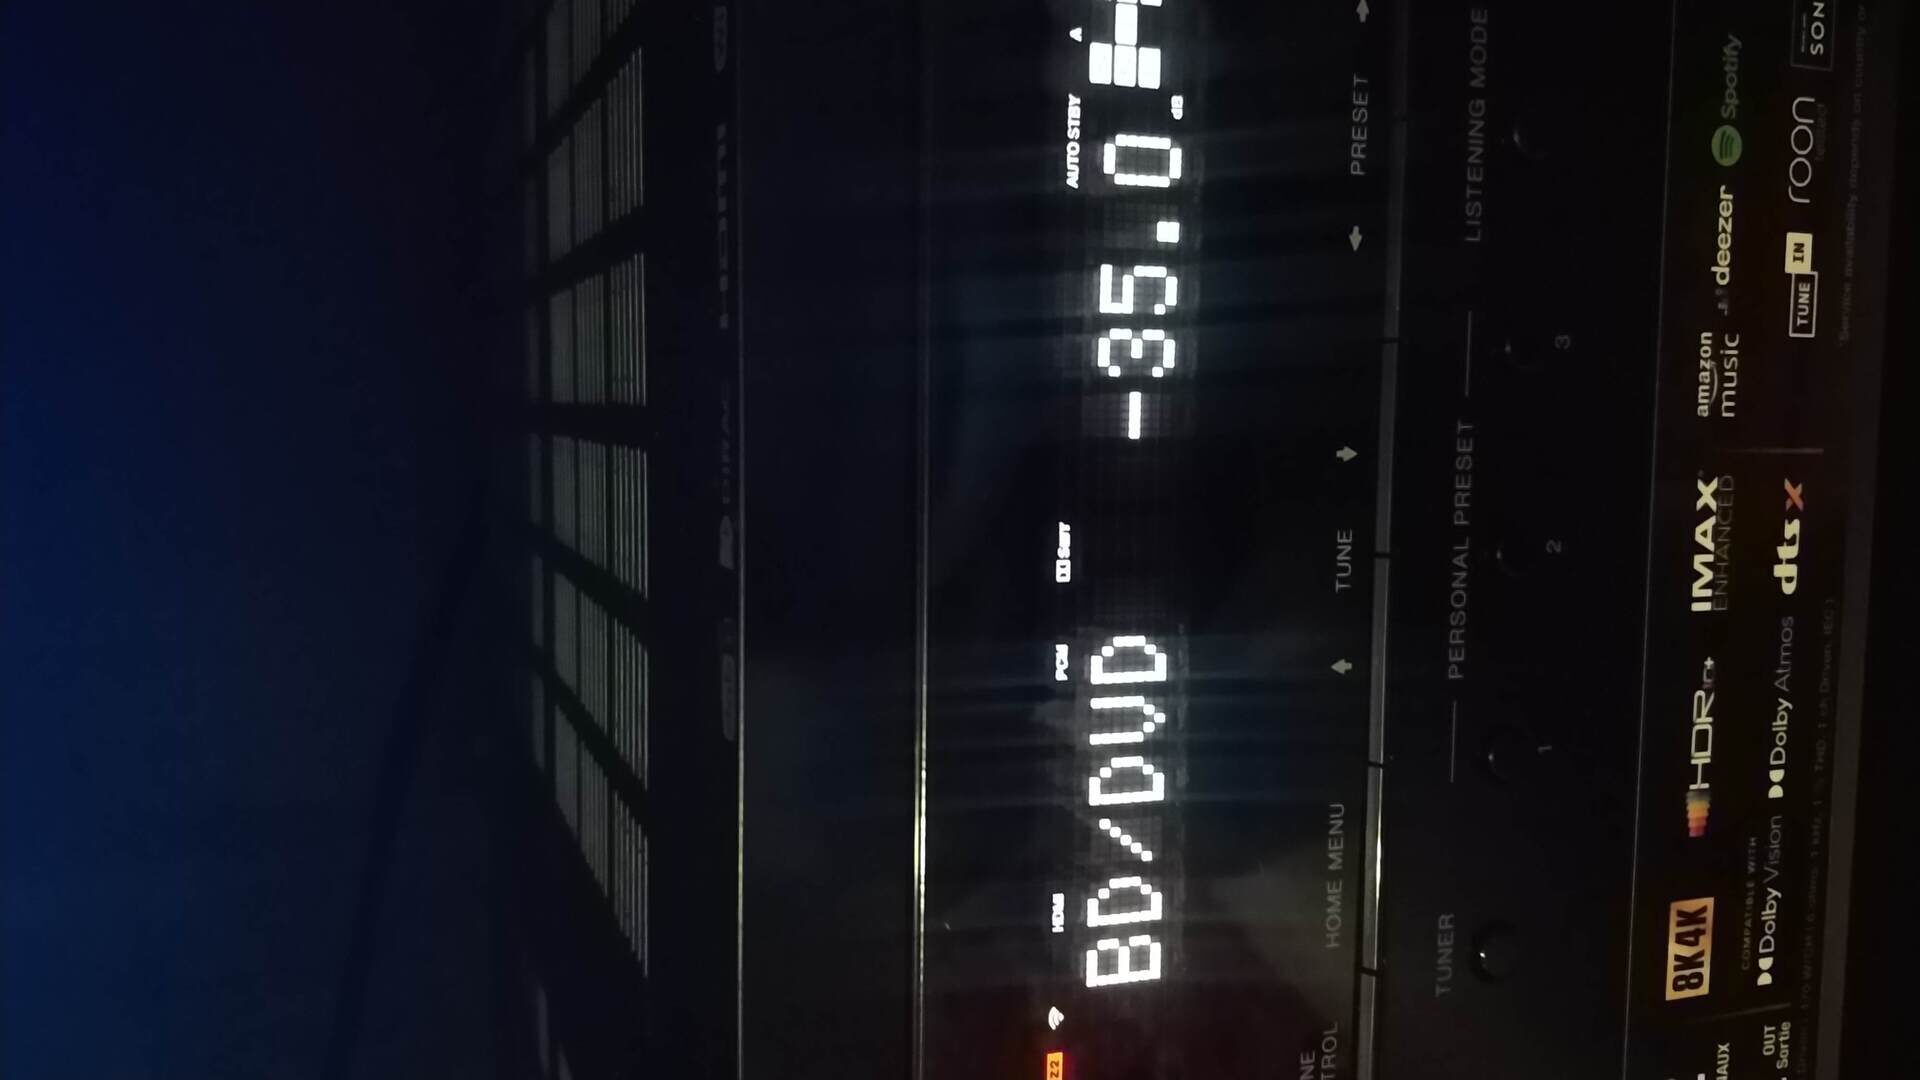 13 xos launcher появилось на экране. Горит на дисплее лифта надпись Fire.